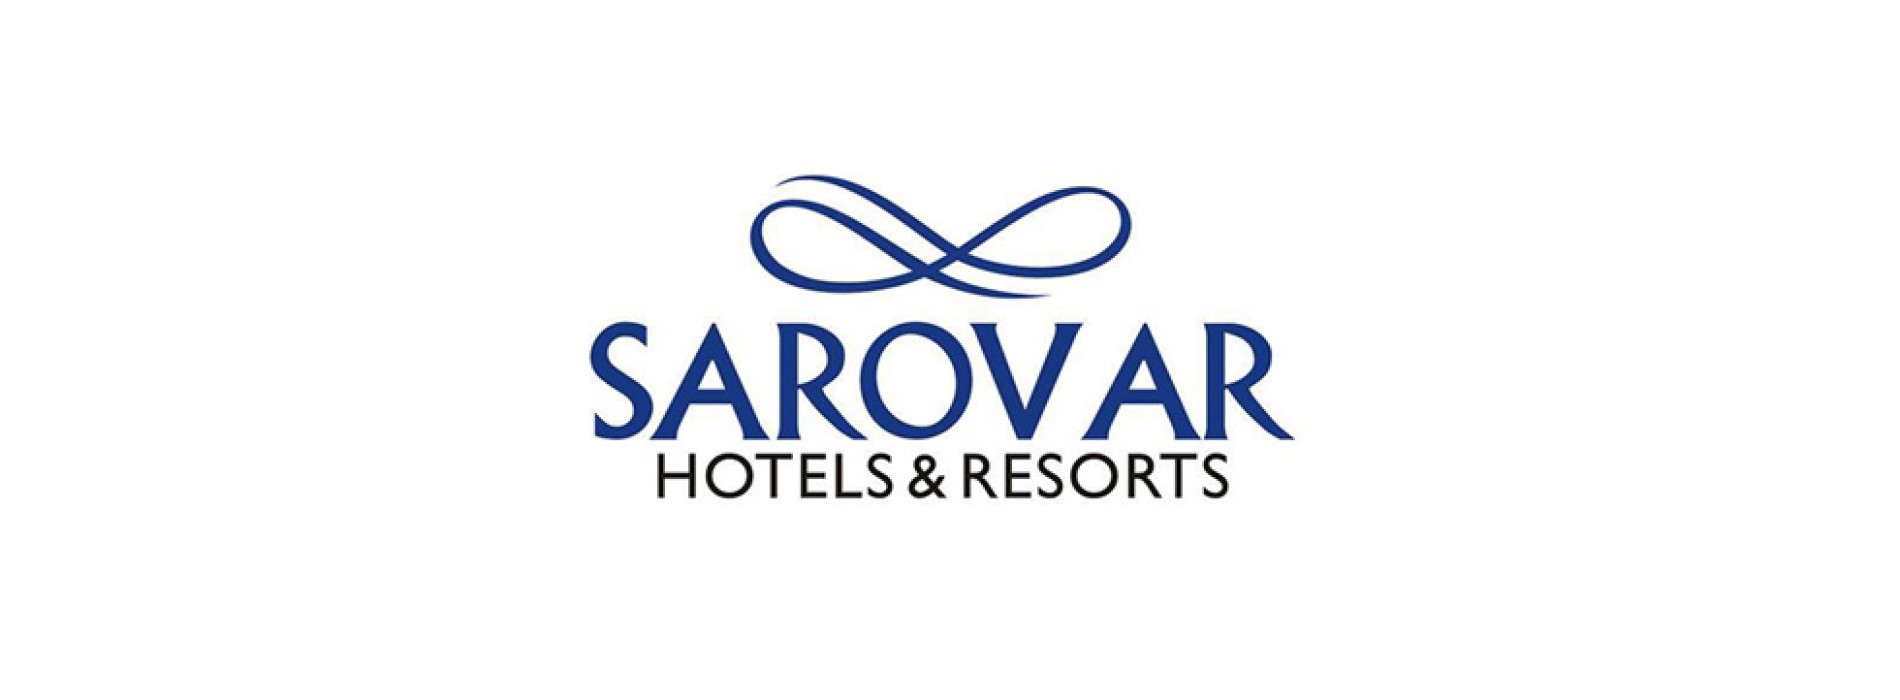 Sarovar Hotels steps into Zambia with Sarovar Premiere Lusaka